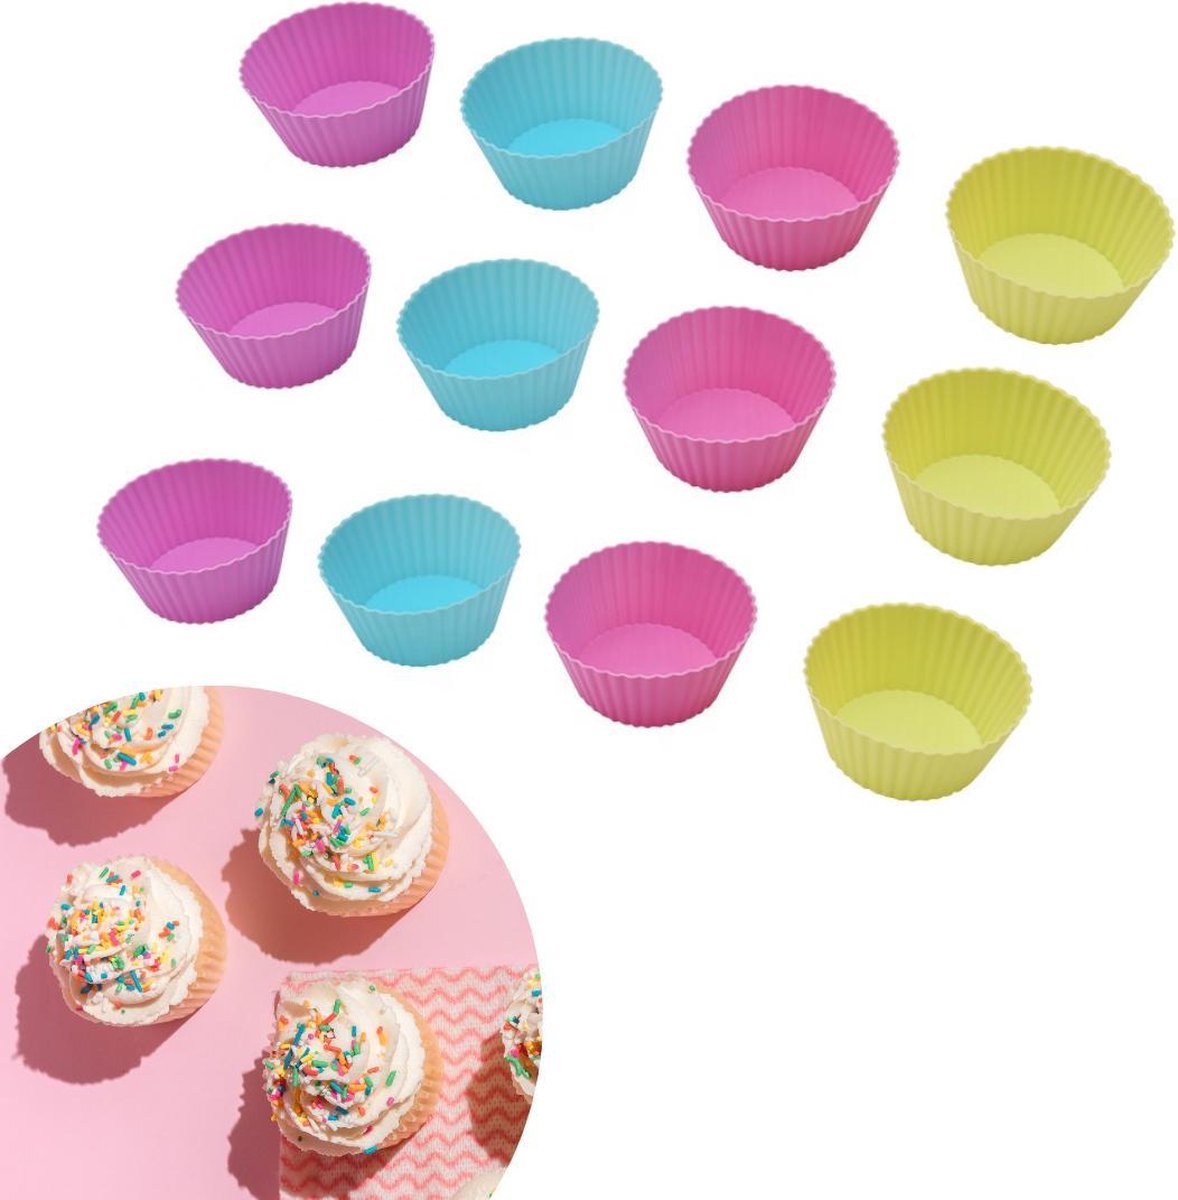 ZijTak - Cupcake - 12 stuks - Vrolijke kleuren - Muffin - Muffinvorm - Cupcakevorm - Silicone - Siliconen - Vaatwasbestendig - Bakken - Taart - Gebak - Vorm - Gratis verzending - Roze Groen Blauw Paars